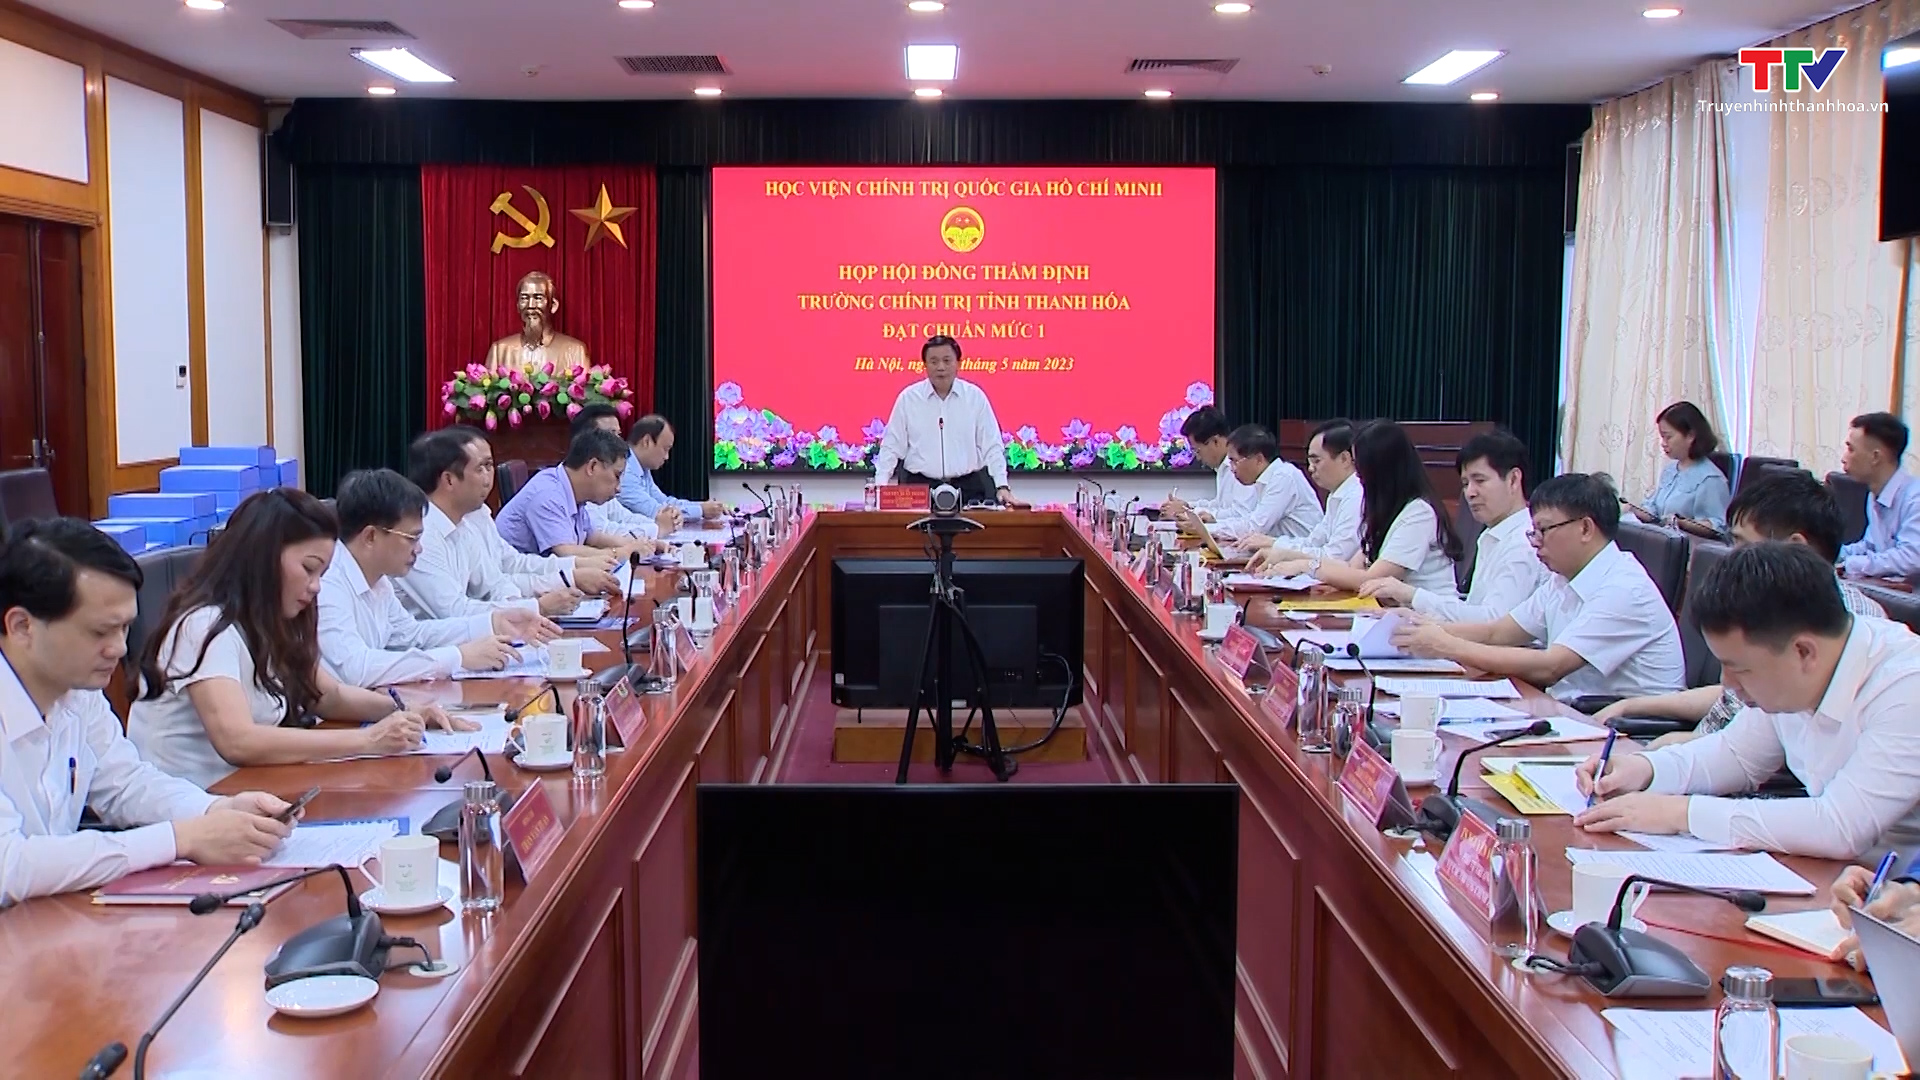 Hành trình xây dựng Trường Chính trị tỉnh Thanh Hóa đạt chuẩn - Ảnh 5.